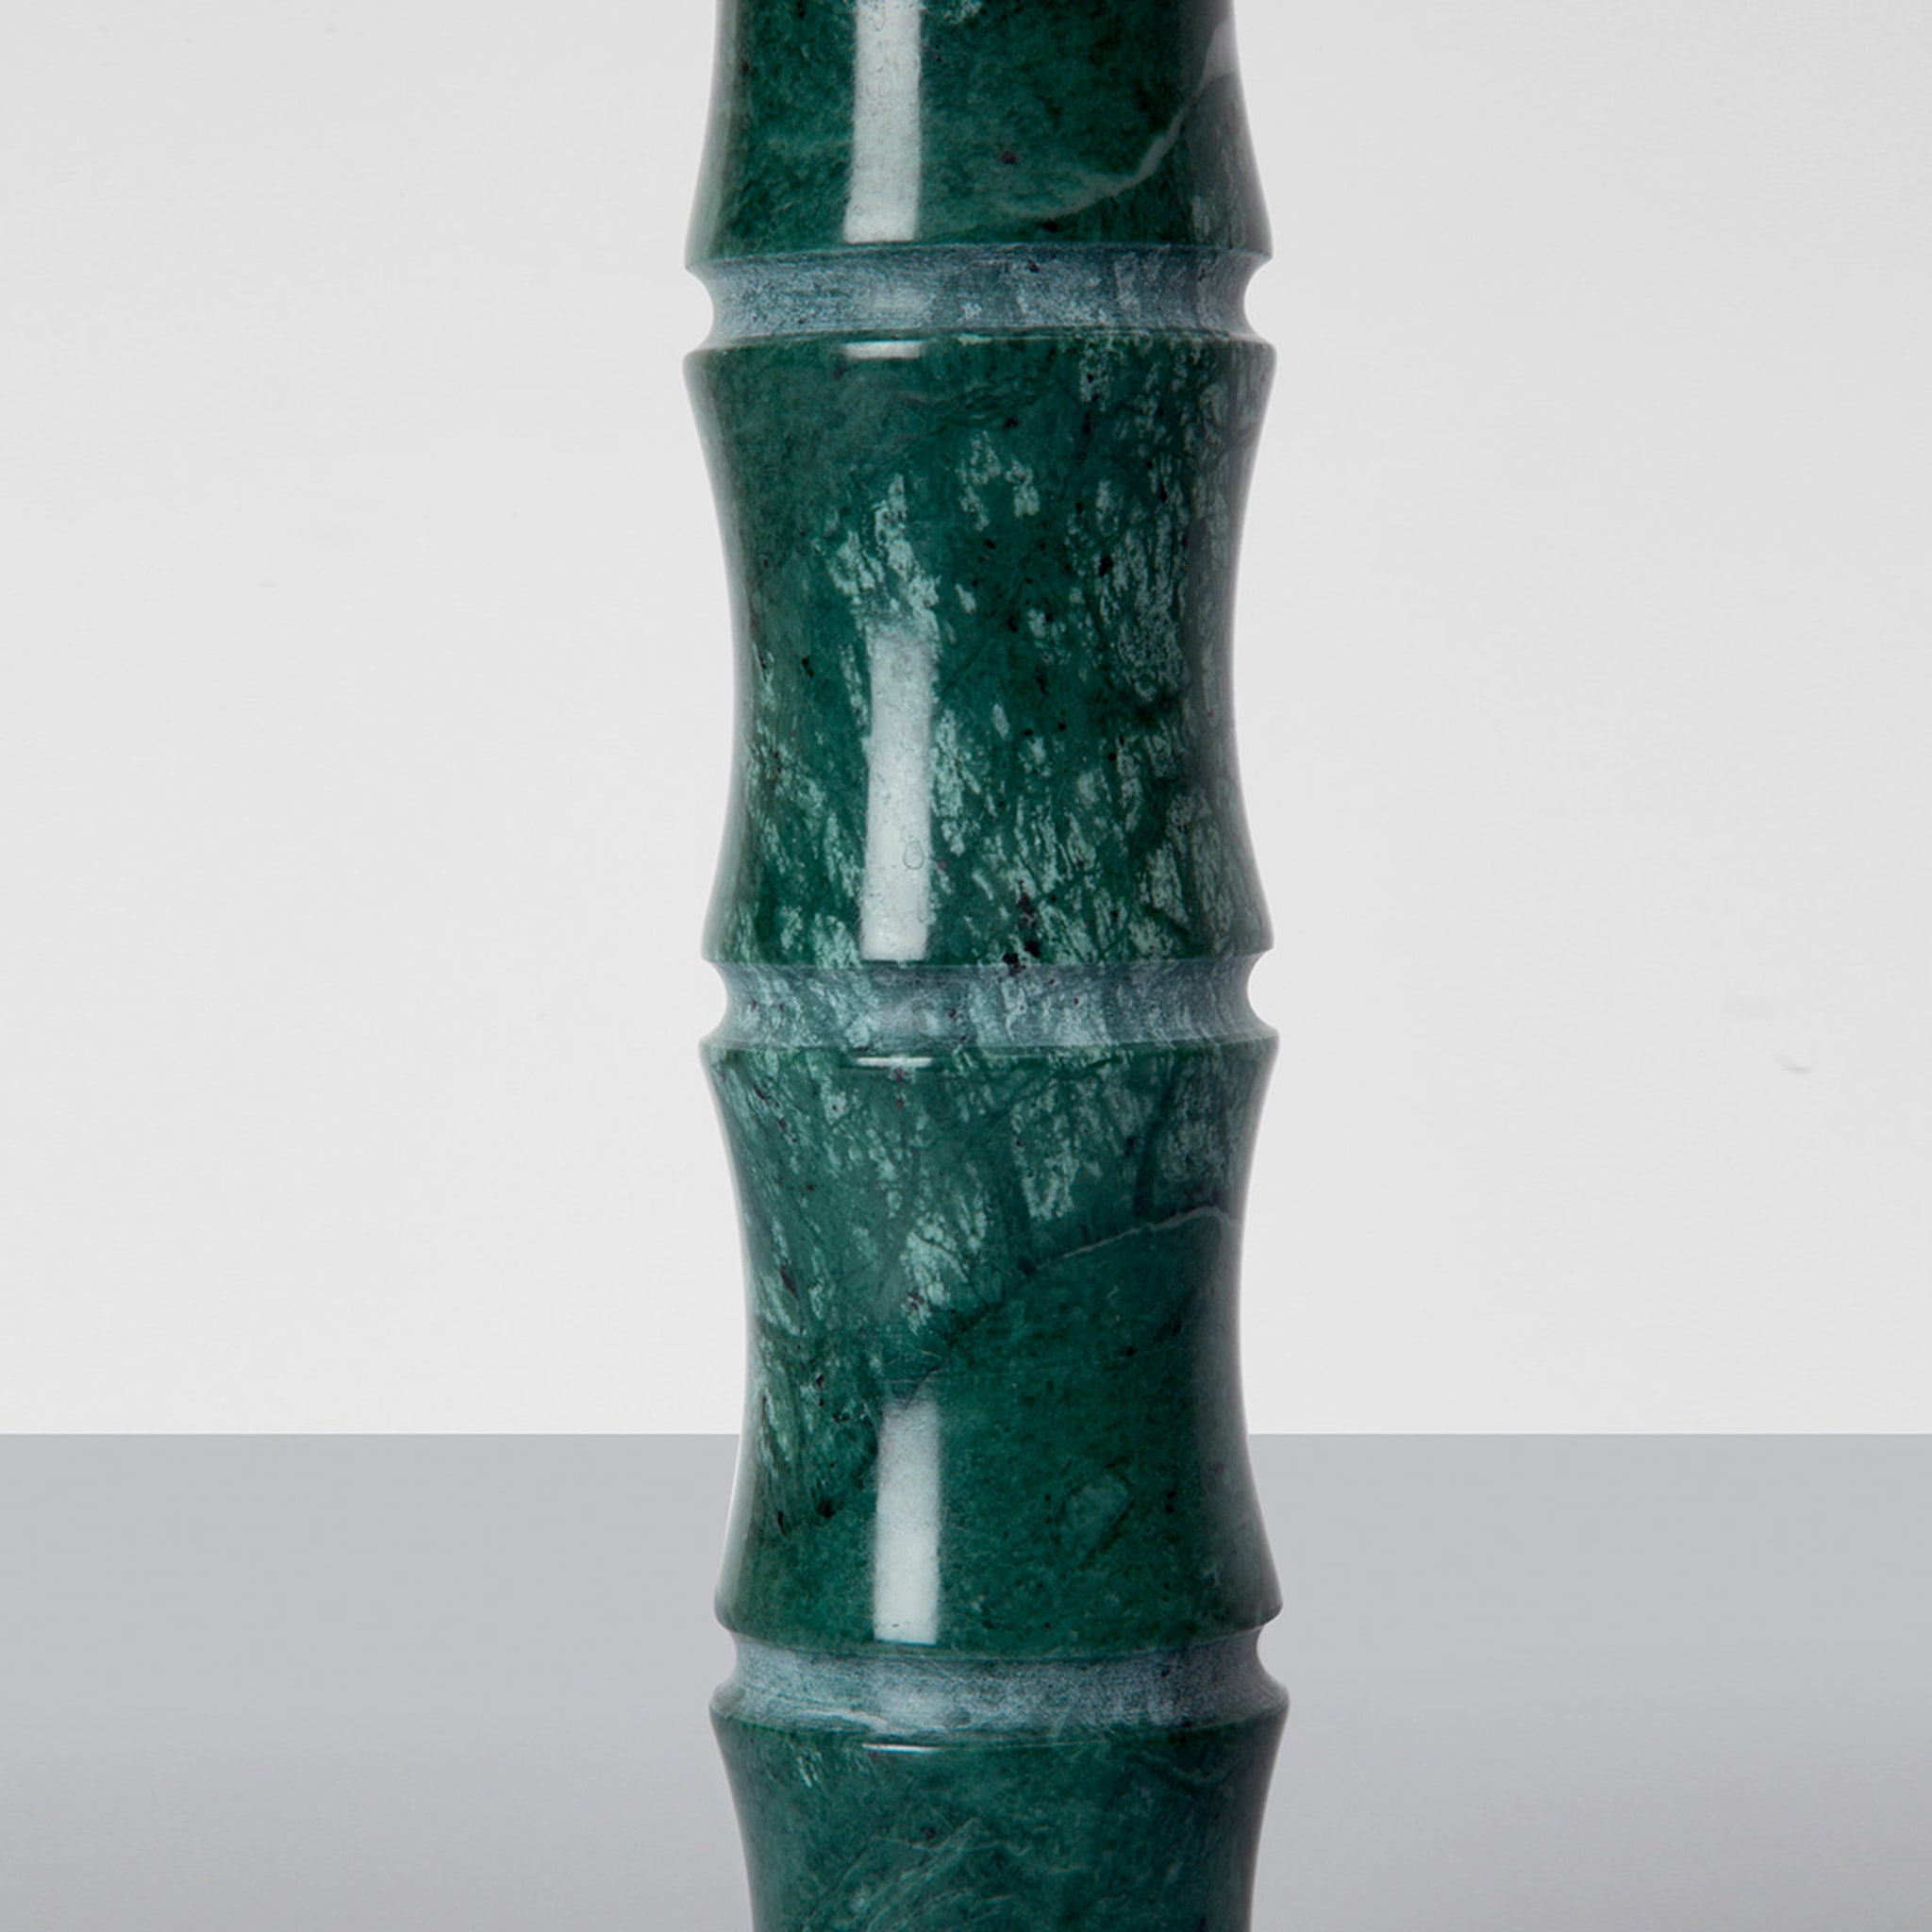 Kadomatsu Large Green Guatemala Vase by Michele Chiossi - Alternative view 2